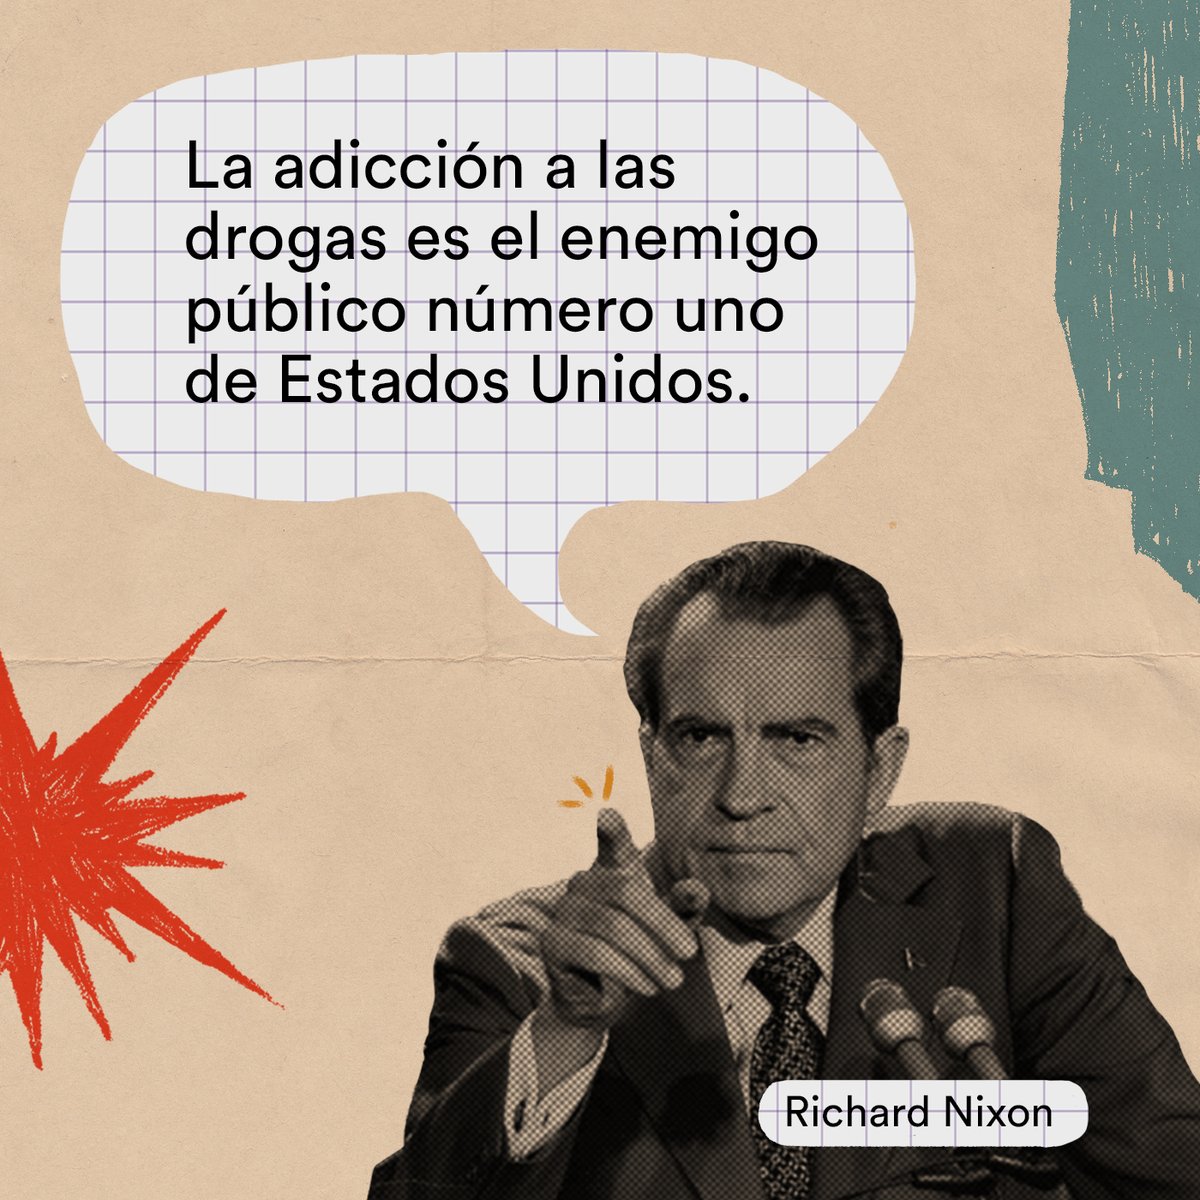 La No Ficción on X: "Han pasado 50 años desde que Nixon declaró la guerra contra las drogas. Una receta que América Latina ha repetido sin éxito. https://t.co/xm49PN4t86" / X